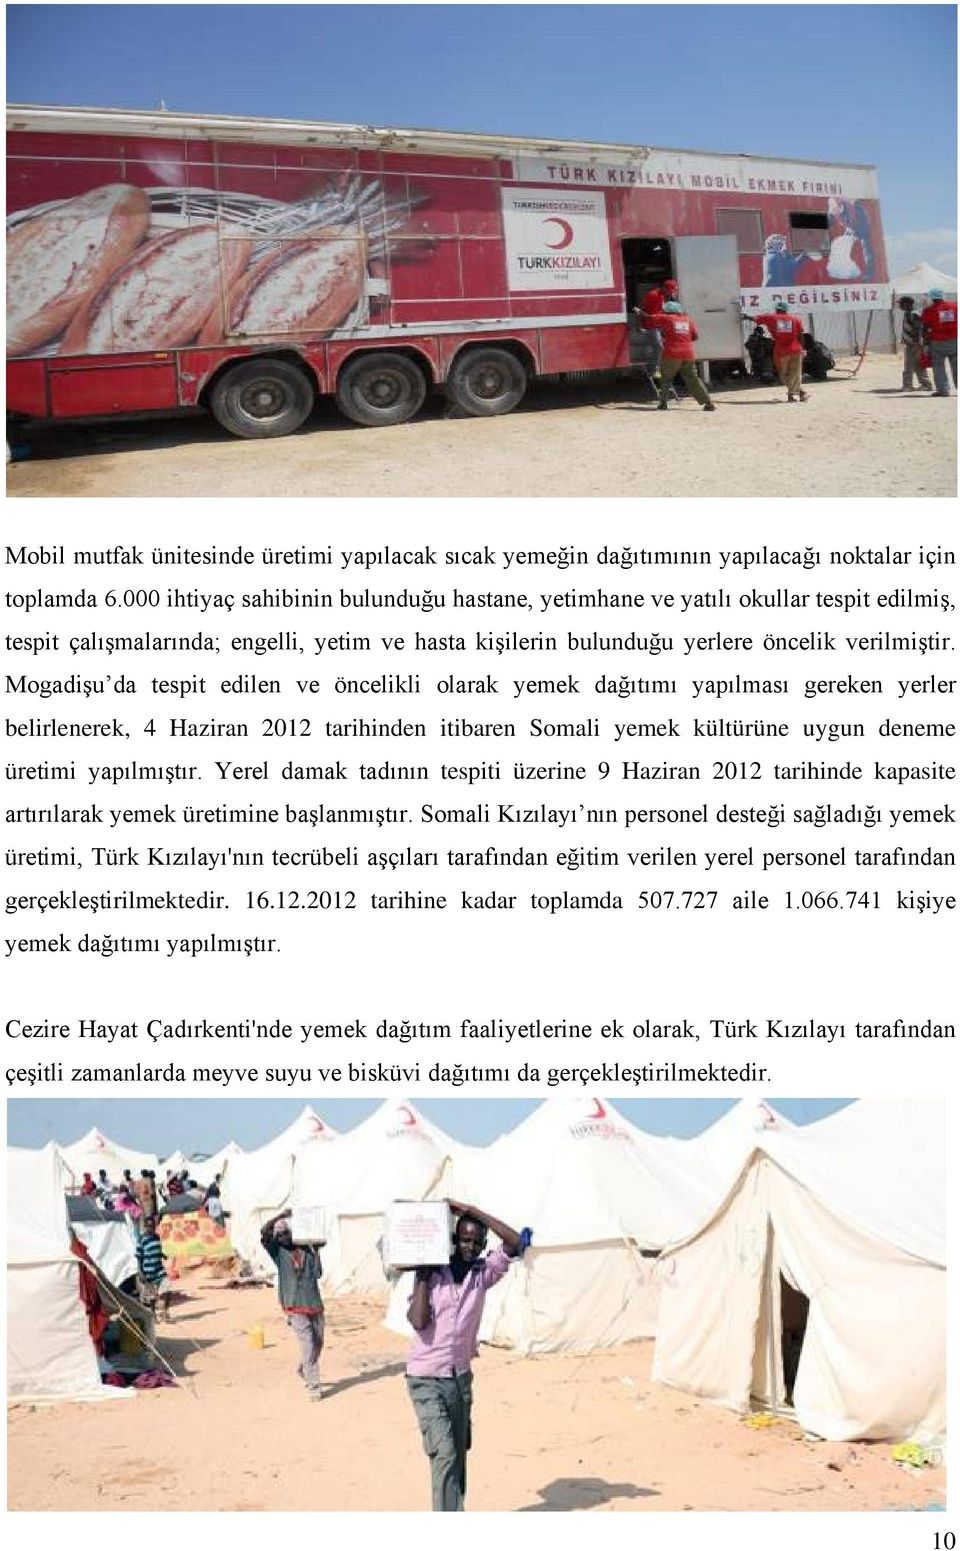 Mogadişu da tespit edilen ve öncelikli olarak yemek dağıtımı yapılması gereken yerler belirlenerek, 4 Haziran 2012 tarihinden itibaren Somali yemek kültürüne uygun deneme üretimi yapılmıştır.